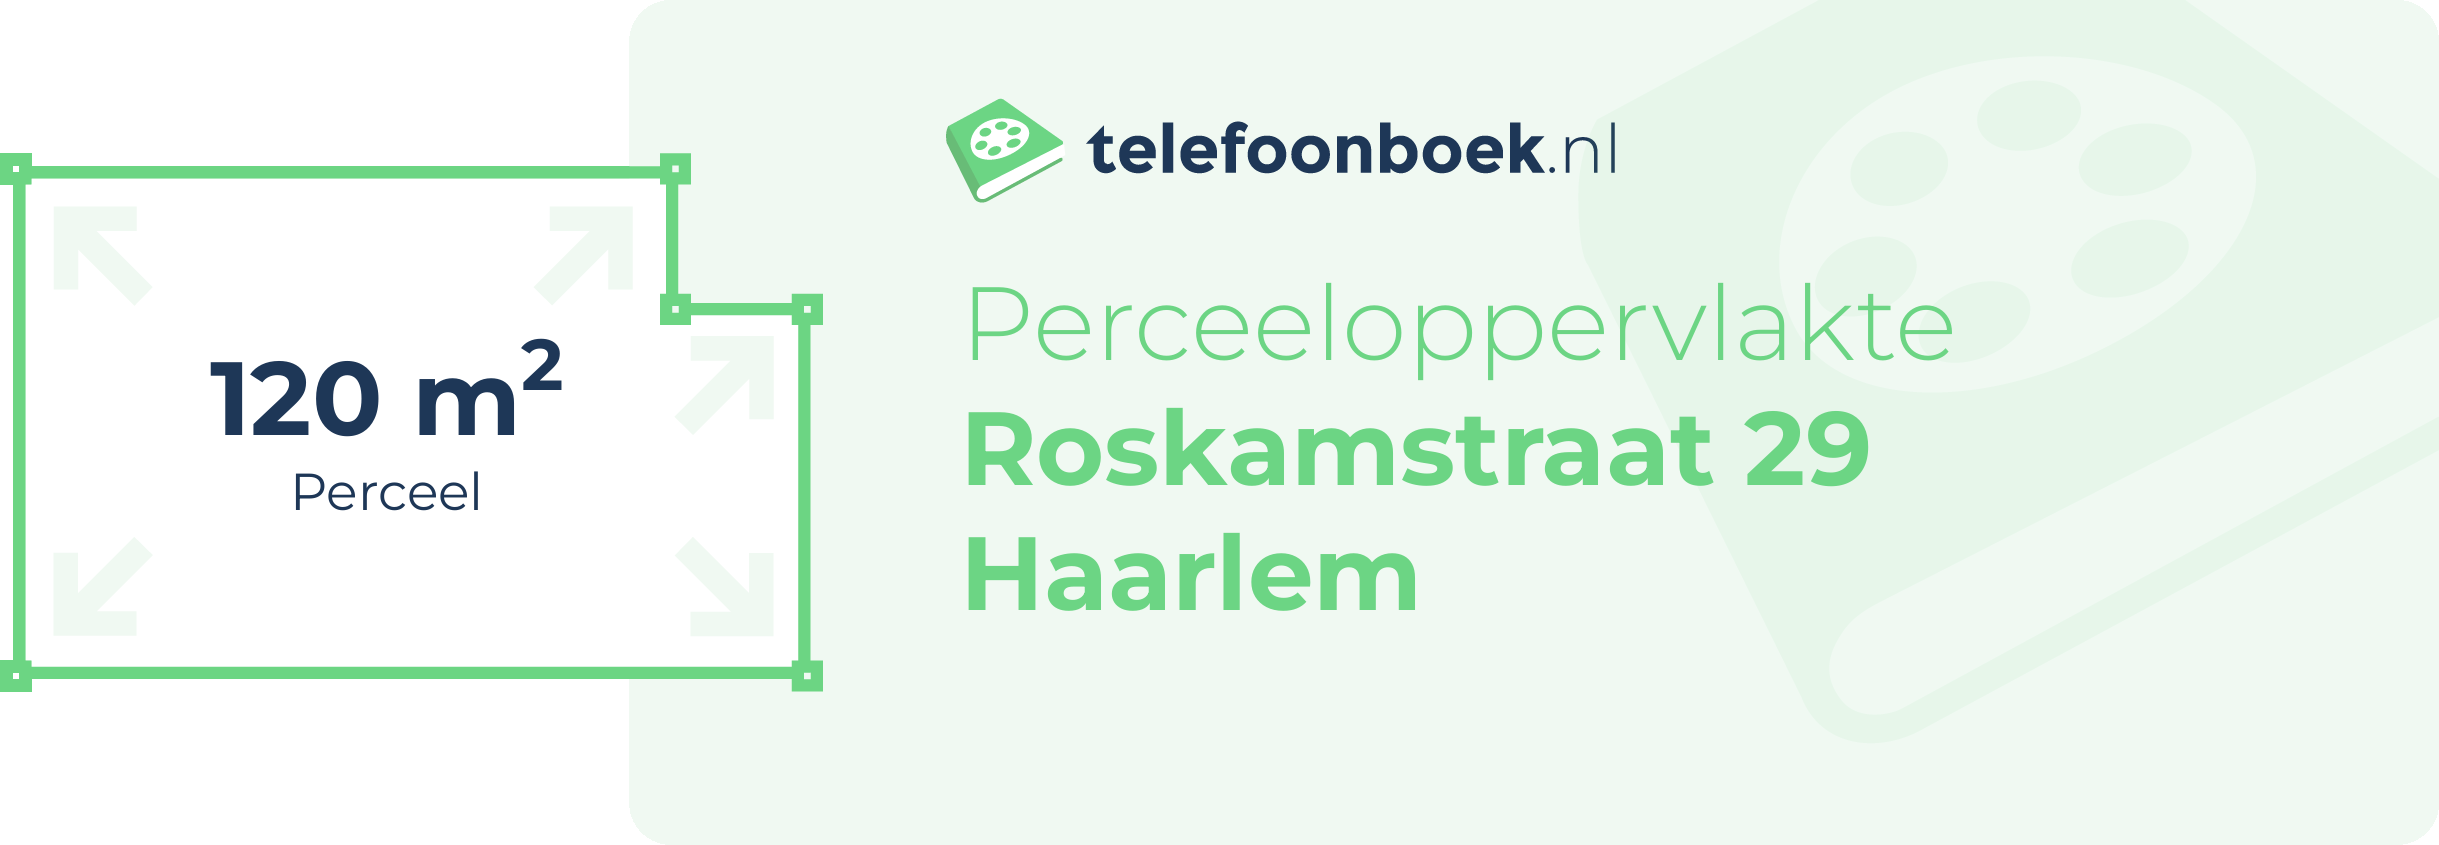 Perceeloppervlakte Roskamstraat 29 Haarlem